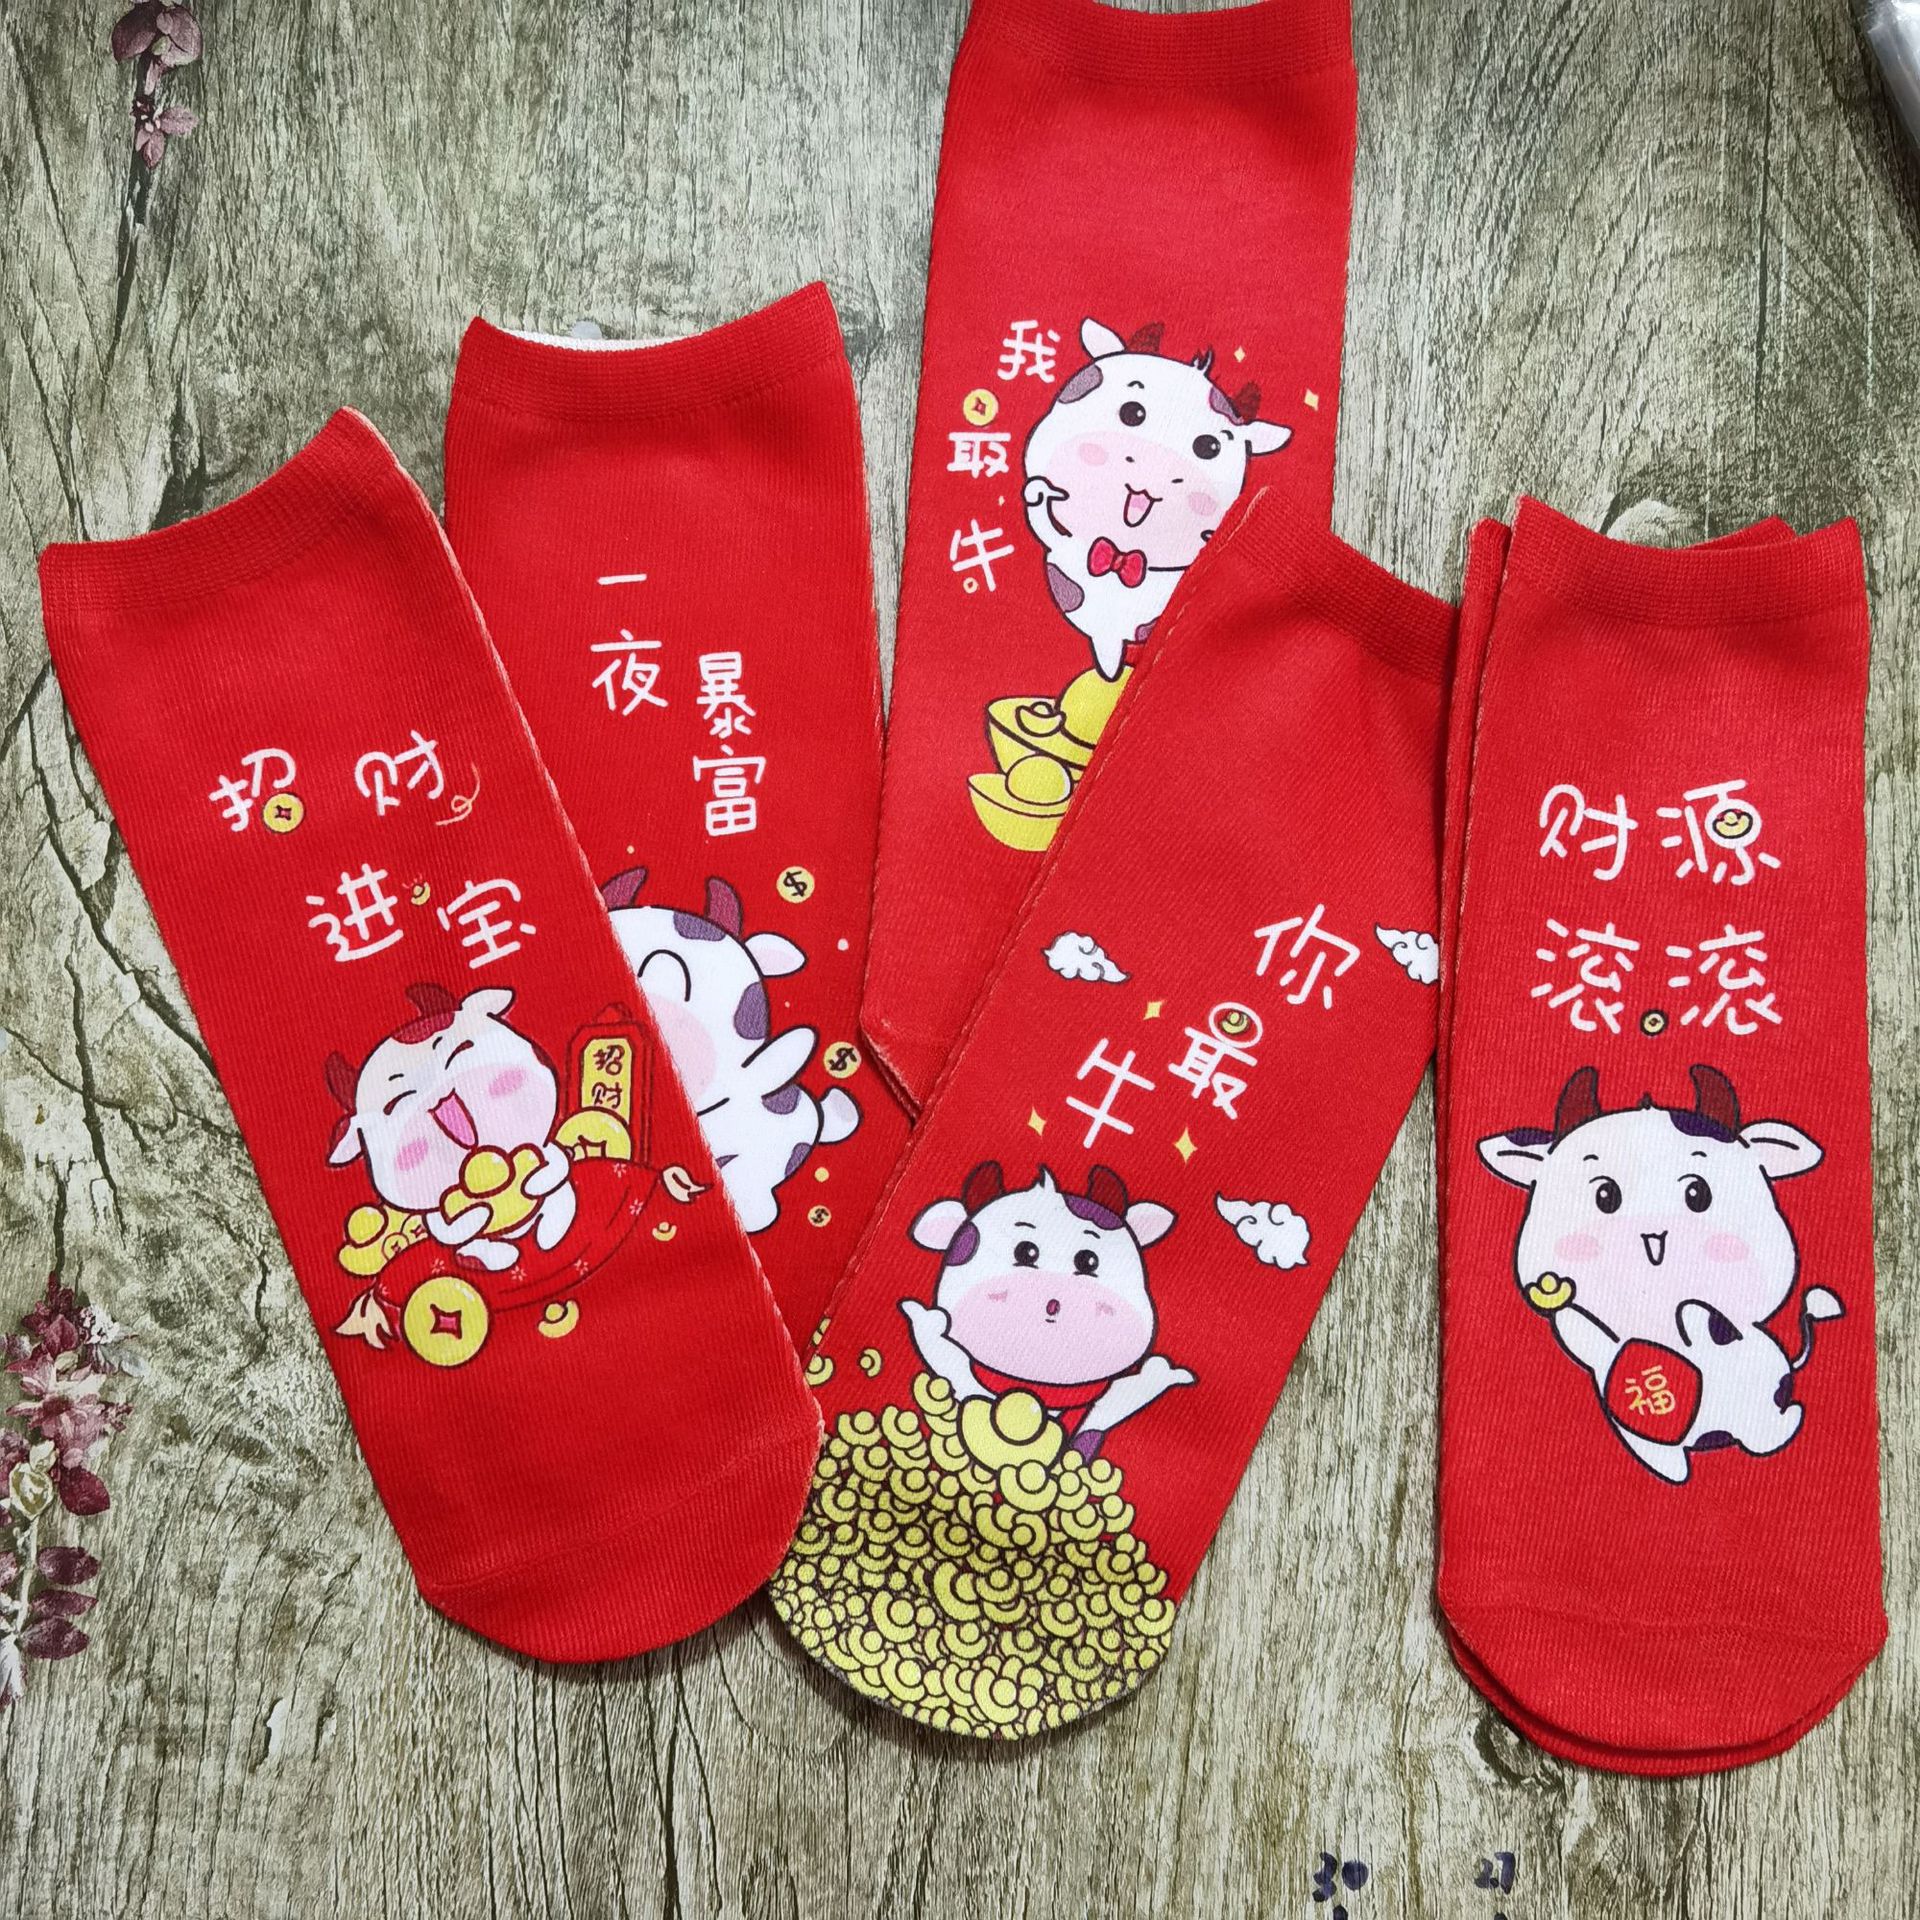 Sublimation blanks sports socks white DIY heat transfer 3D printing socks for kids adults men women 15cm 20cm 30cm 40cm